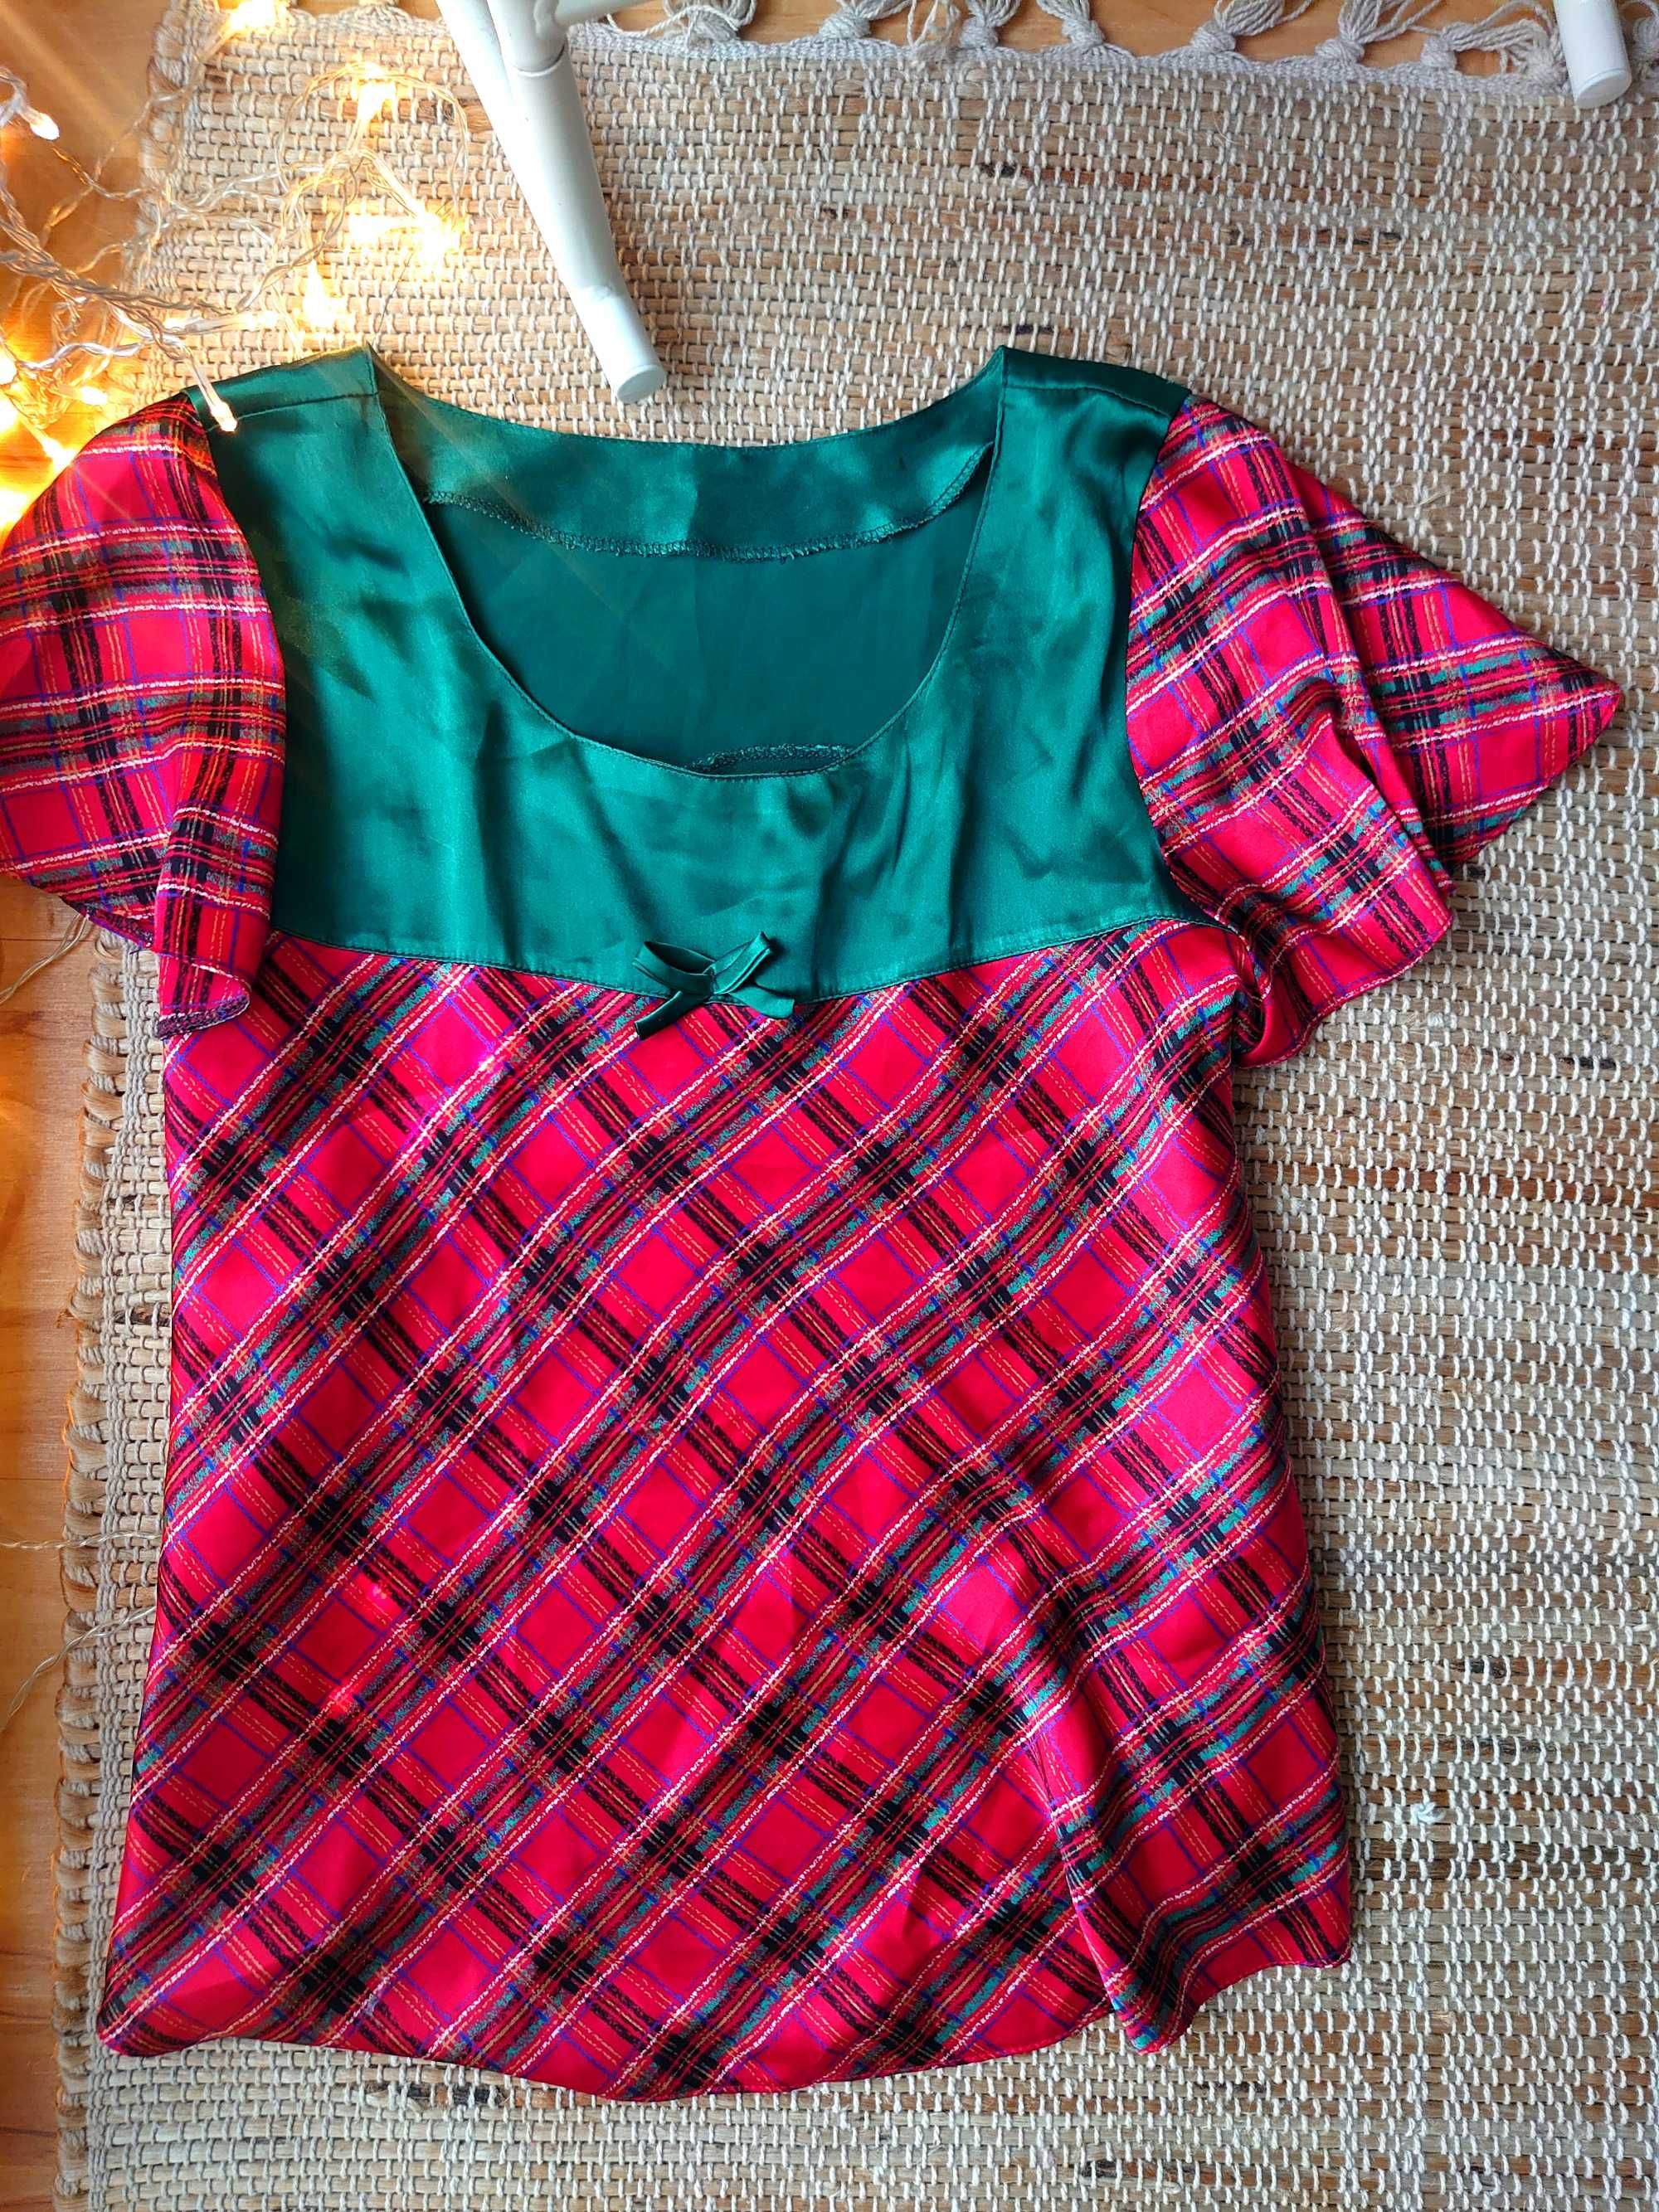 Piżama czerwona i zielona